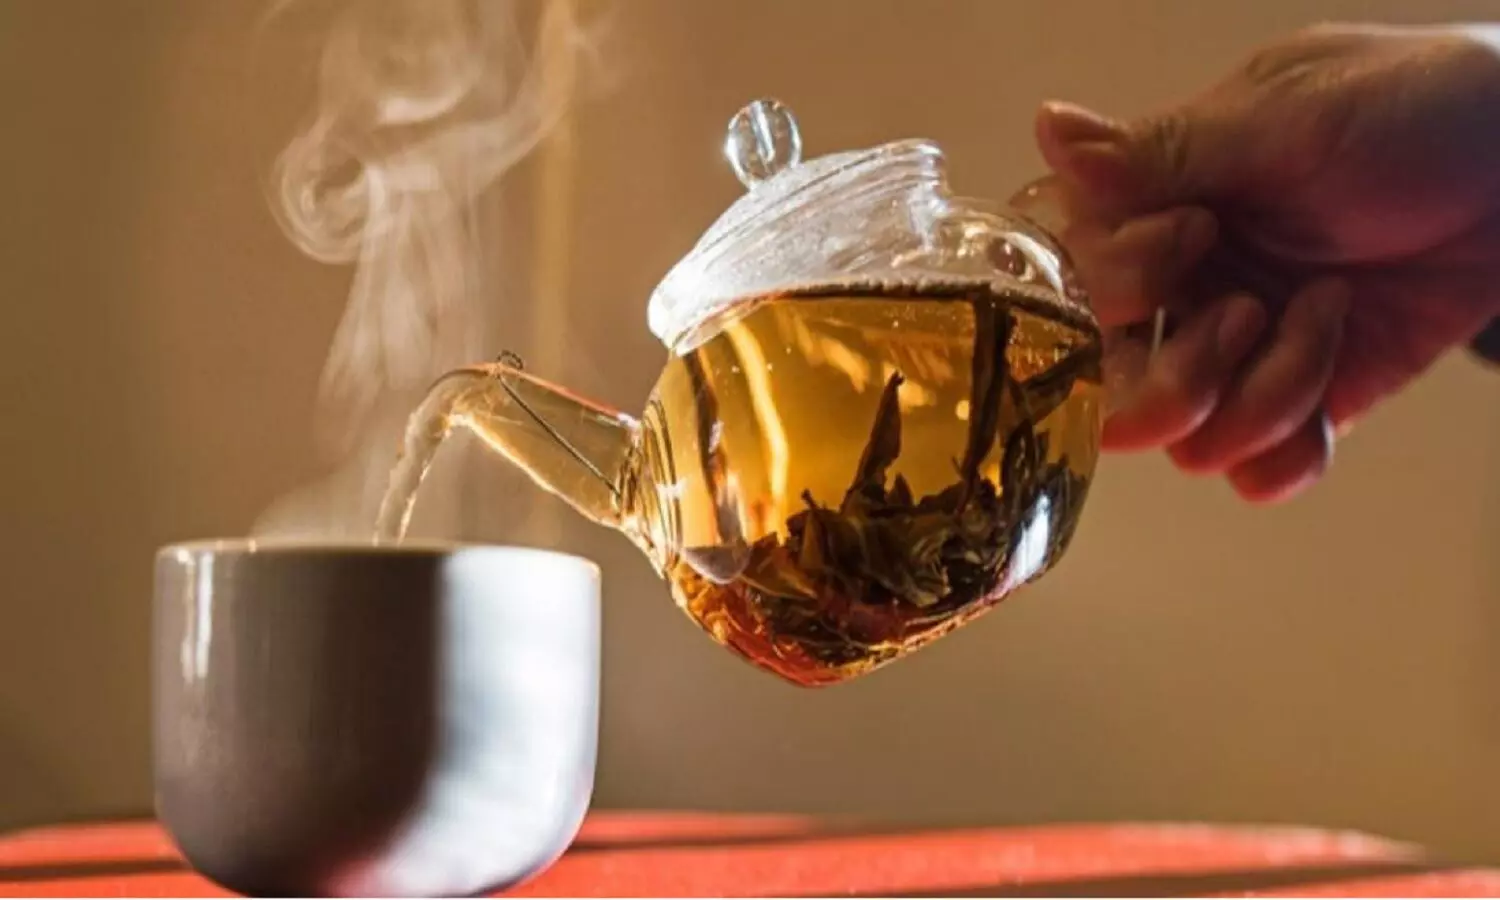 दुनिया की सबसे महंगी चाय Da Hong Pao जो 9 करोड़ रुपए प्रति किलो मिलती है